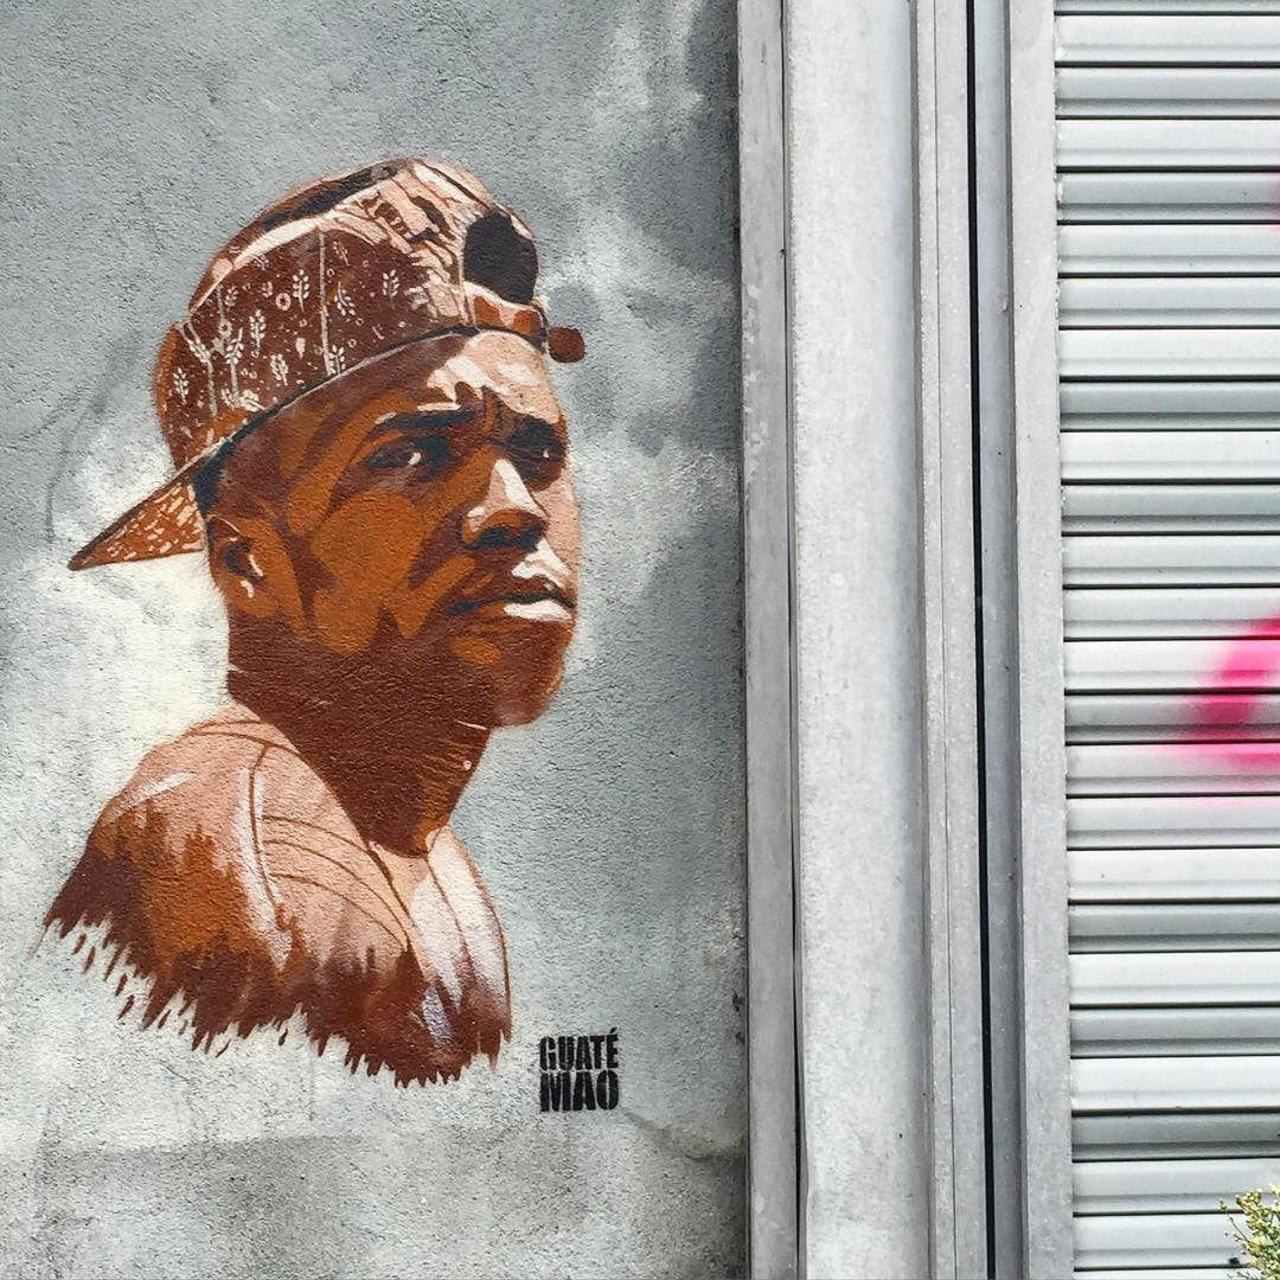 #Paris #graffiti photo by hookedblog http://ift.tt/1Rv7qVr #StreetArt http://t.co/lAFKLOVL7T https://goo.gl/7kifqw